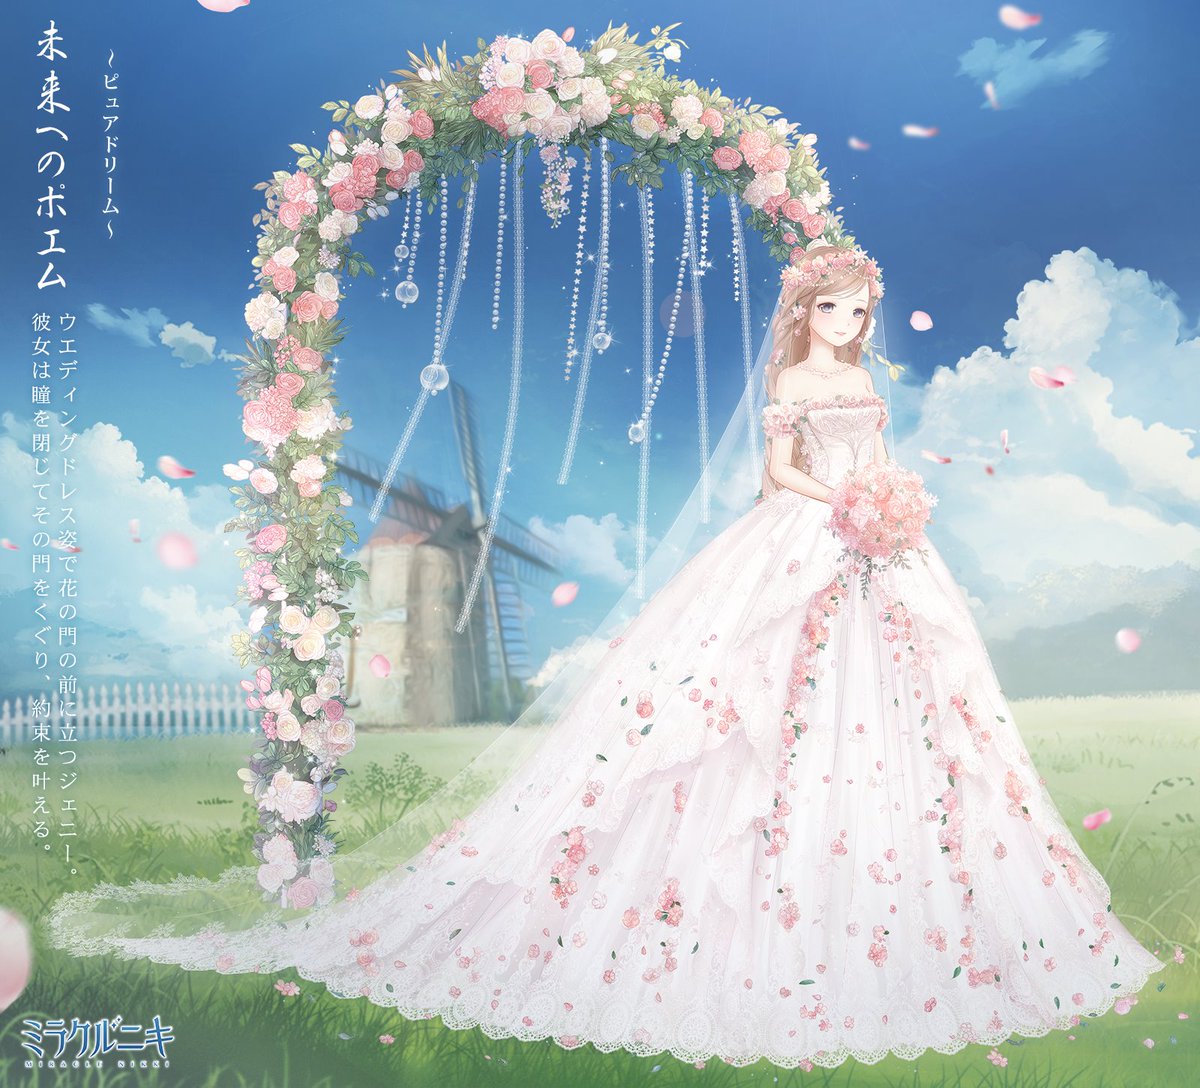 ミラクルニキ公式 ウエディングドレス姿で花の門の前に立つジェニー 彼女は瞳を閉じてその門をくぐり 約束を叶える ミラクルニキ T Co Fqbuuzai8j Twitter